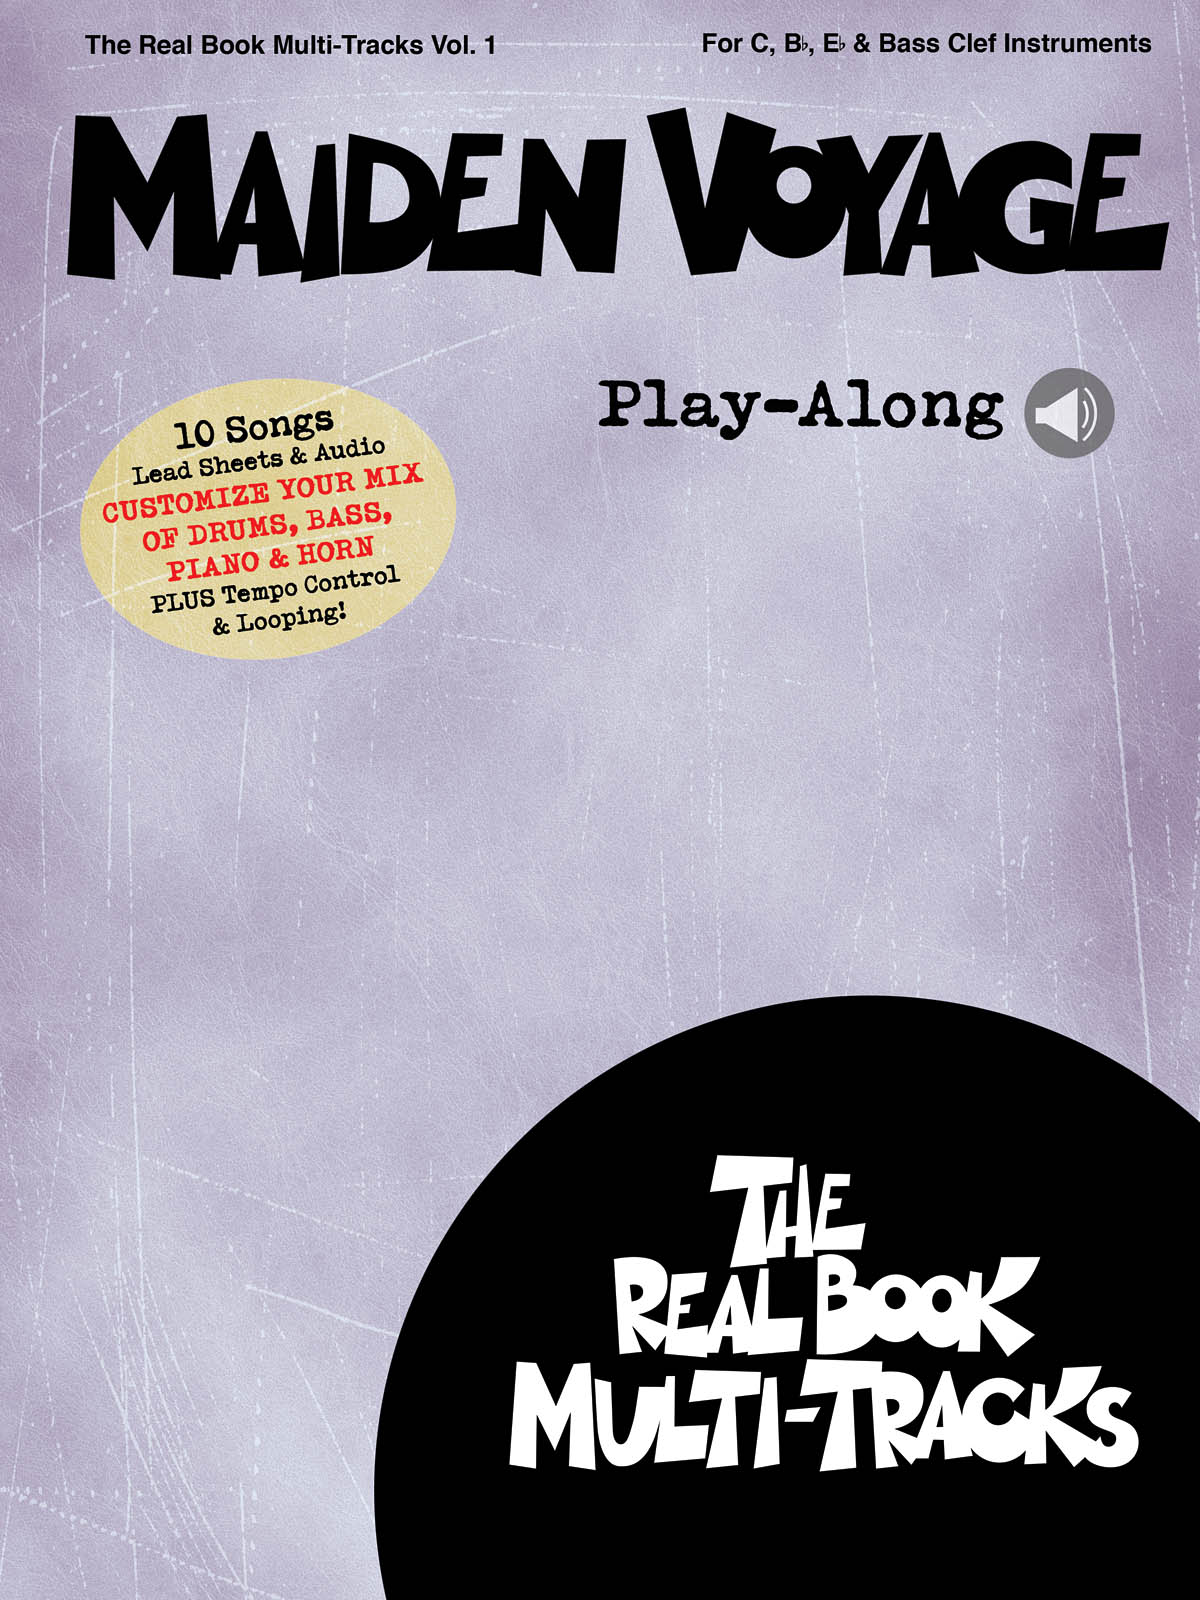 Maiden Voyage Play-Along - Real Book Multi-Tracks Volume 1 - skladby pro nástroje v ladění C, B, Es